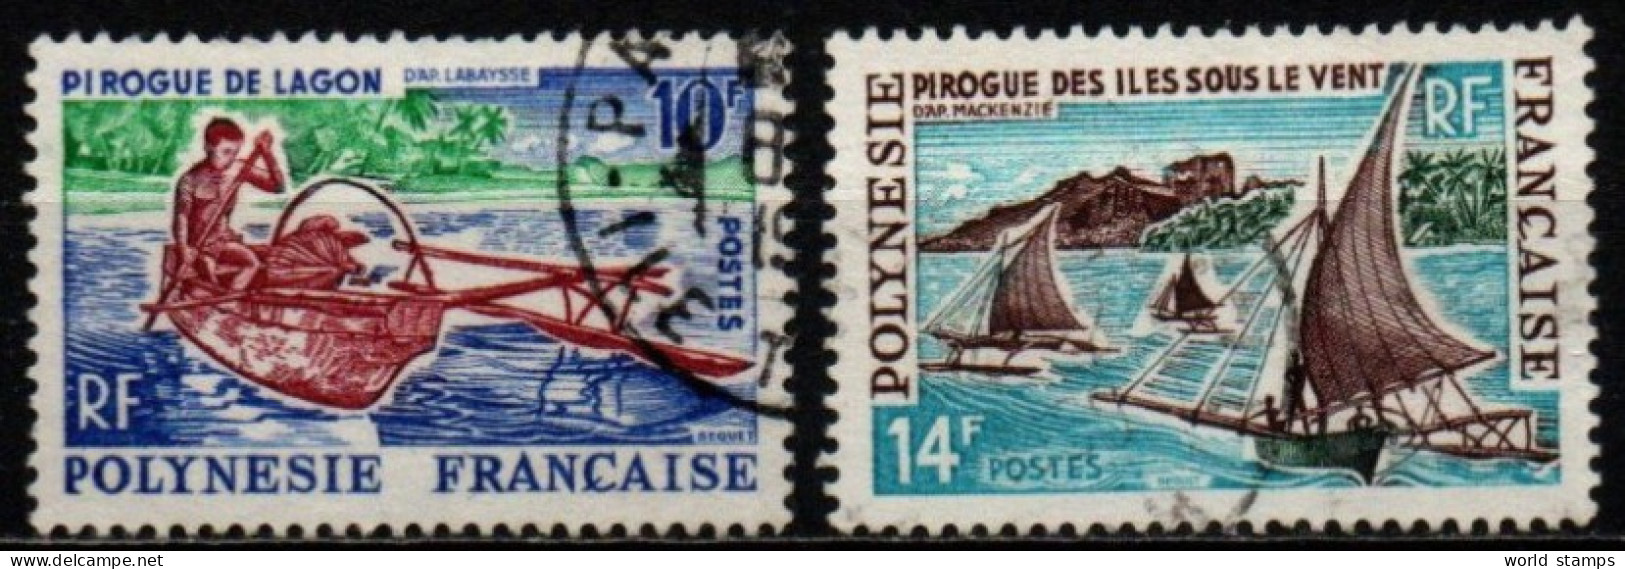 POLINESIE FR. 1966 O - Usati